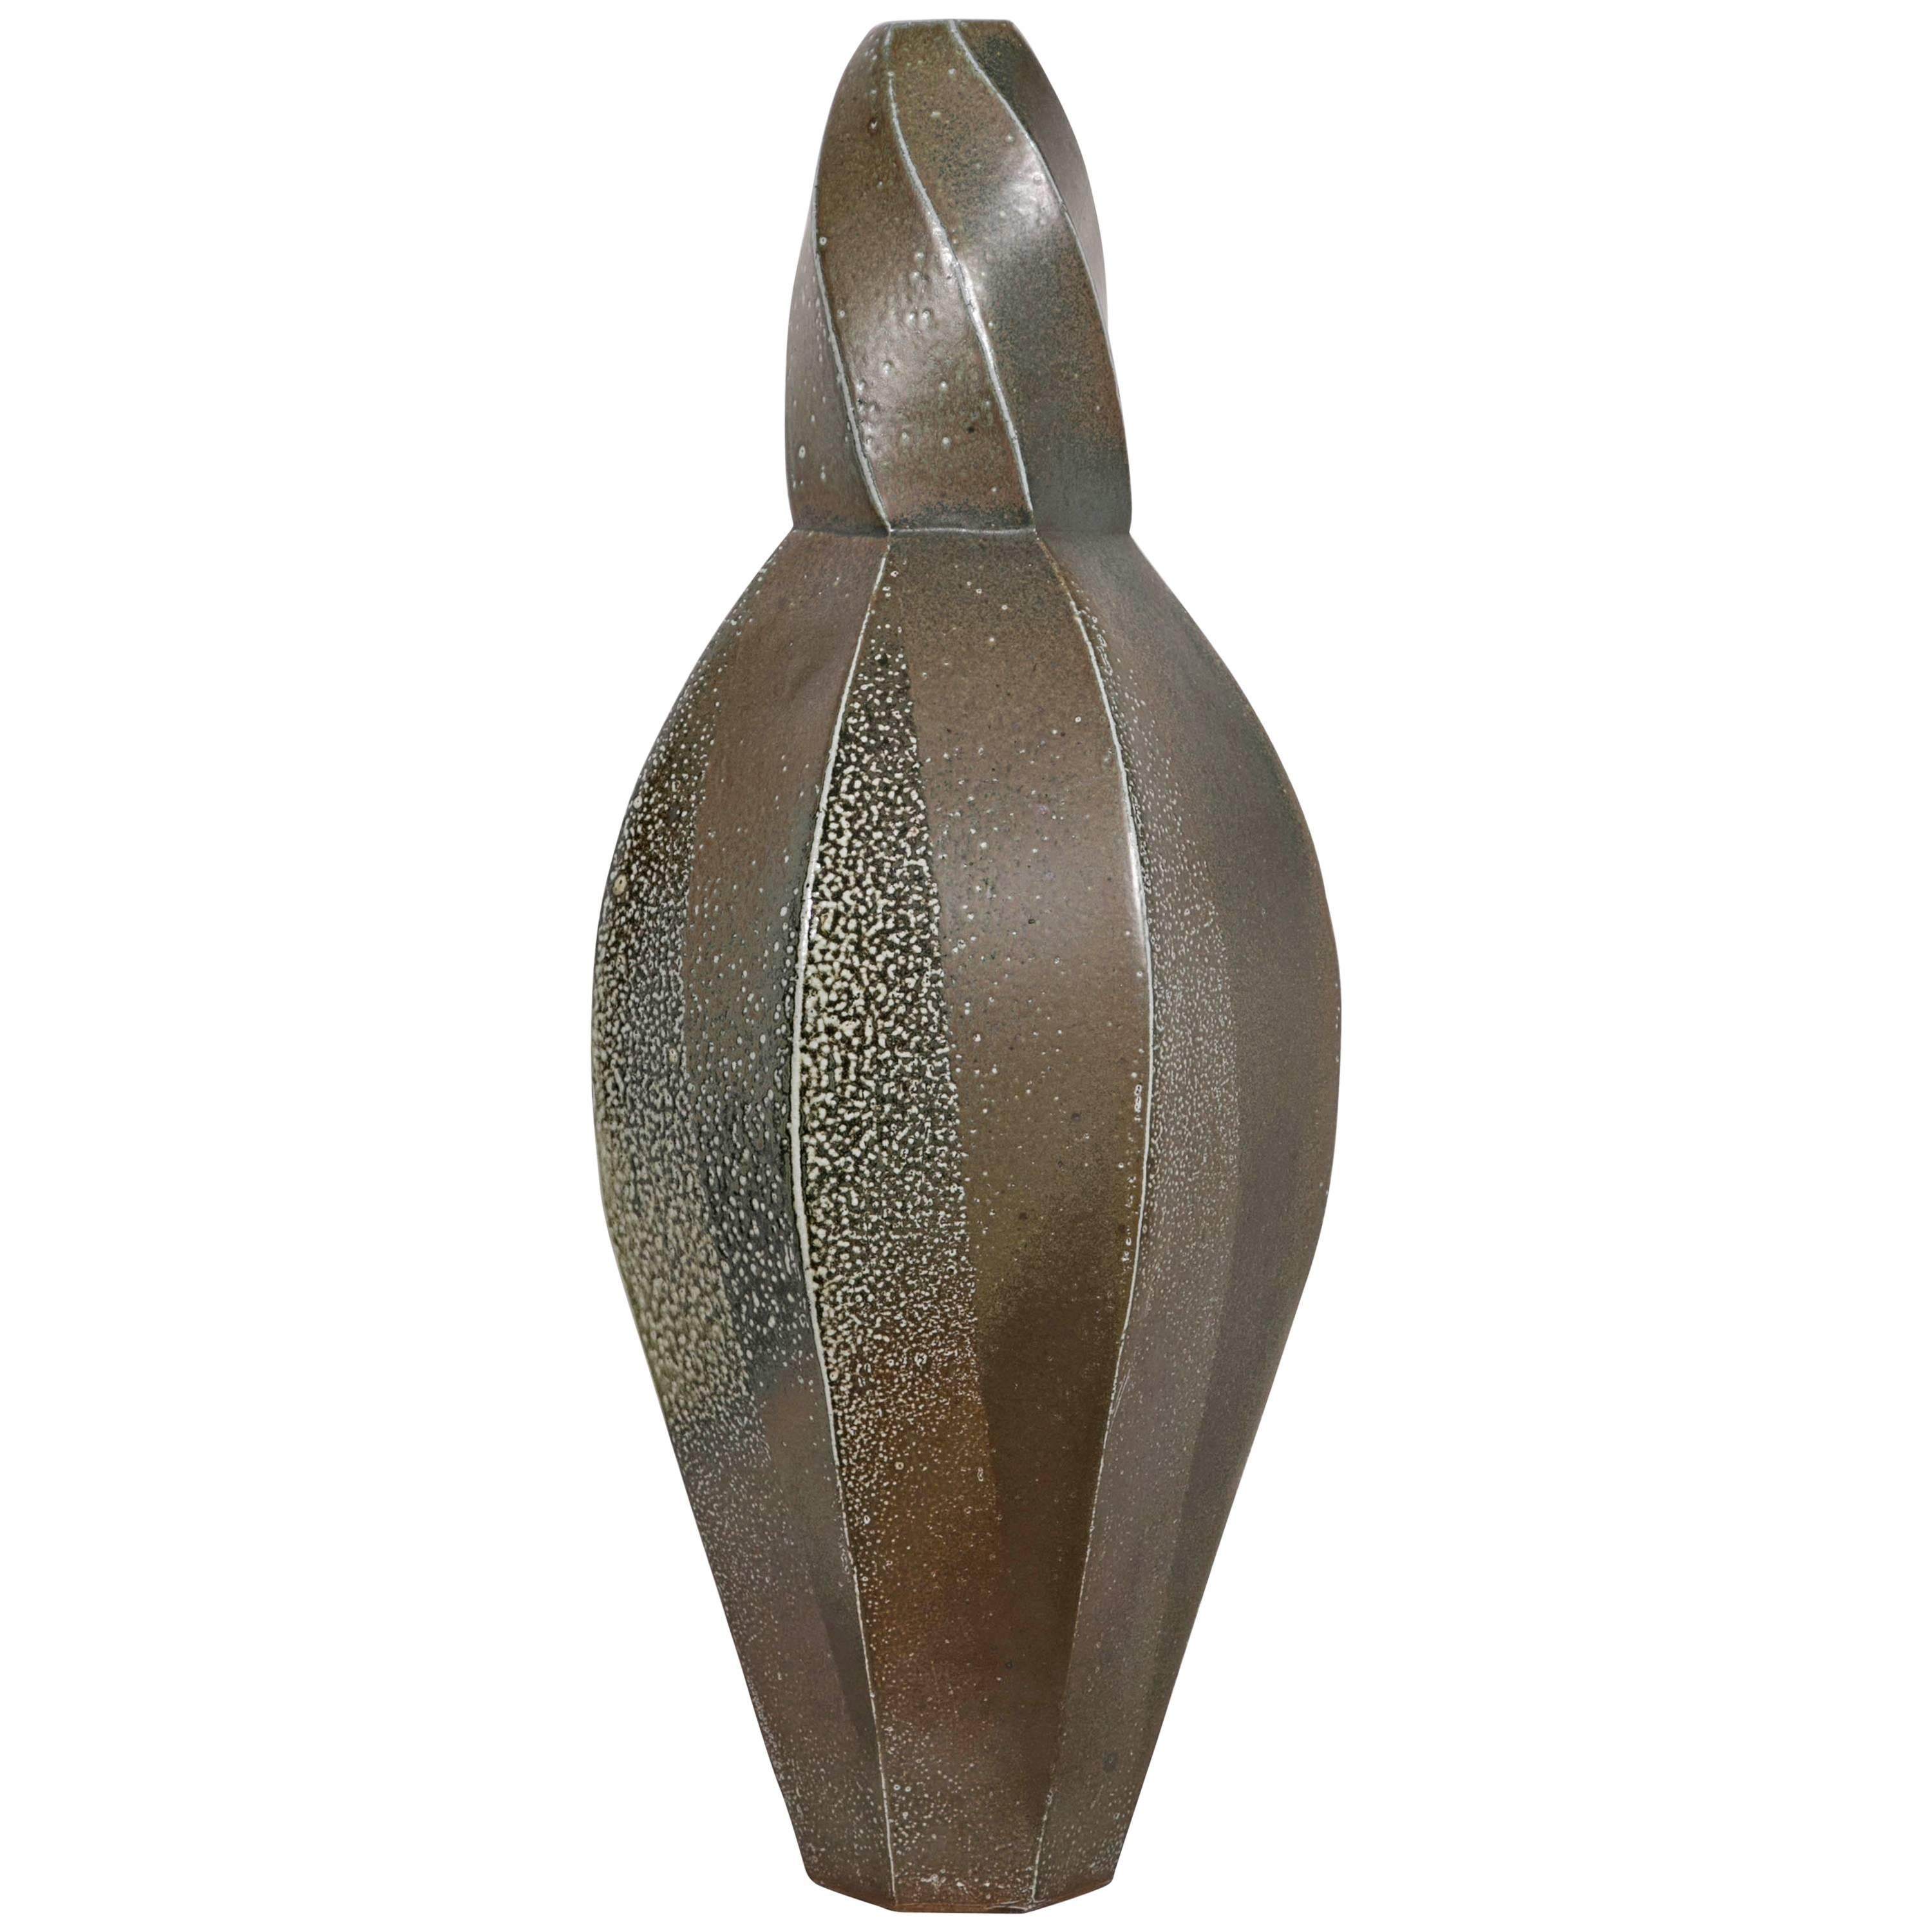 Important Vase in Danish Glazed Ceramic